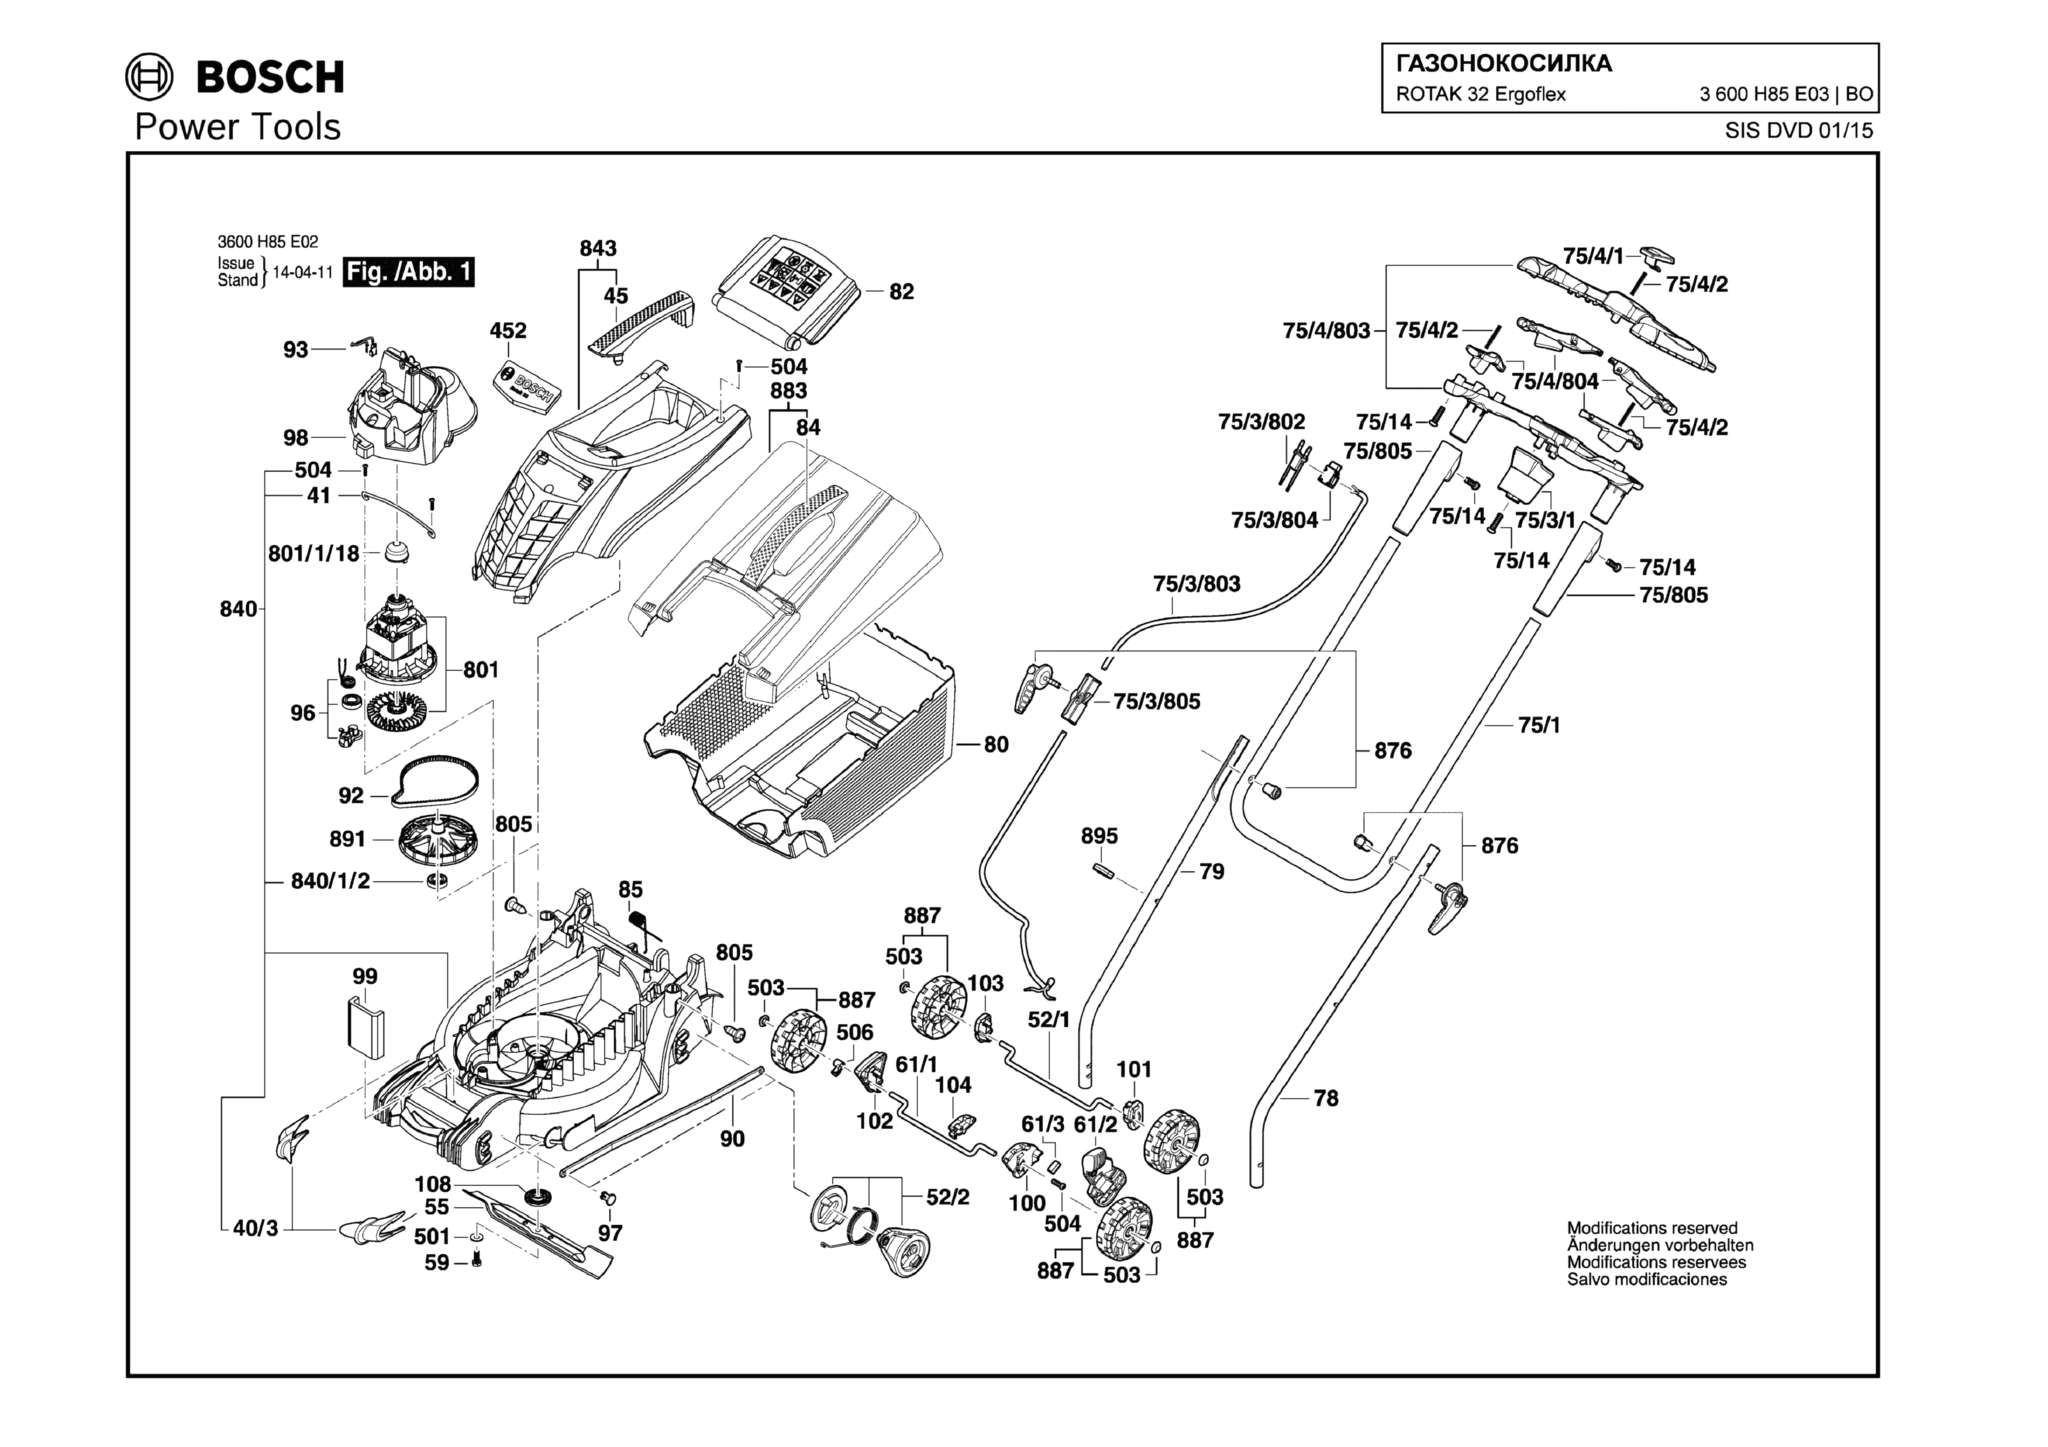 Запчасти, схема и деталировка Bosch ROTAK 32 ERGOFLEX (ТИП 3600H85E03)